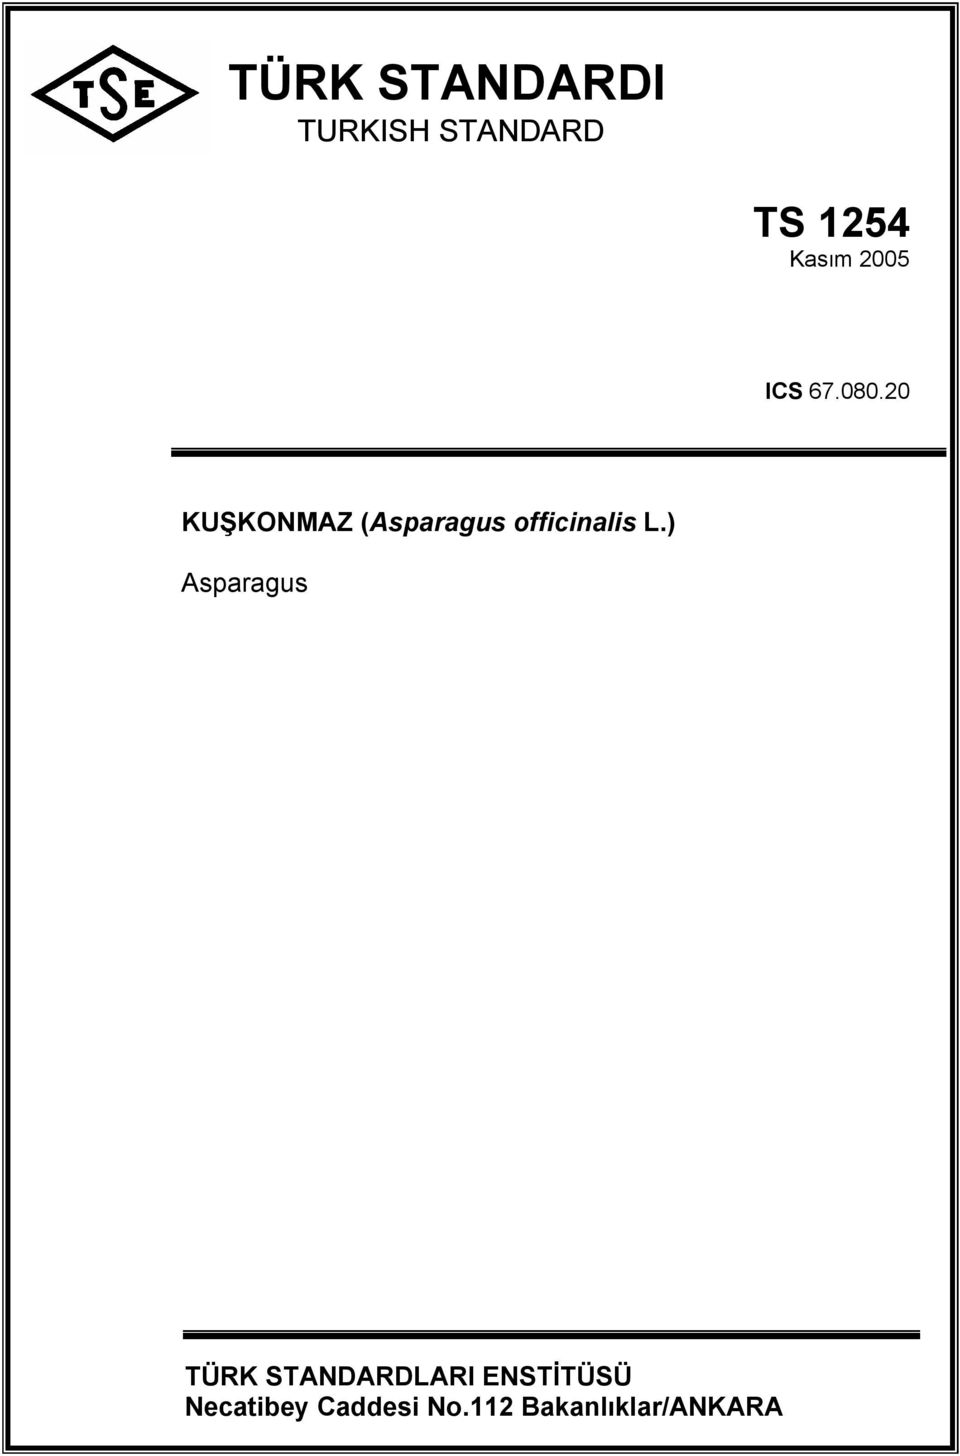 20 KU KONMAZ (Asparagus officinalis L.